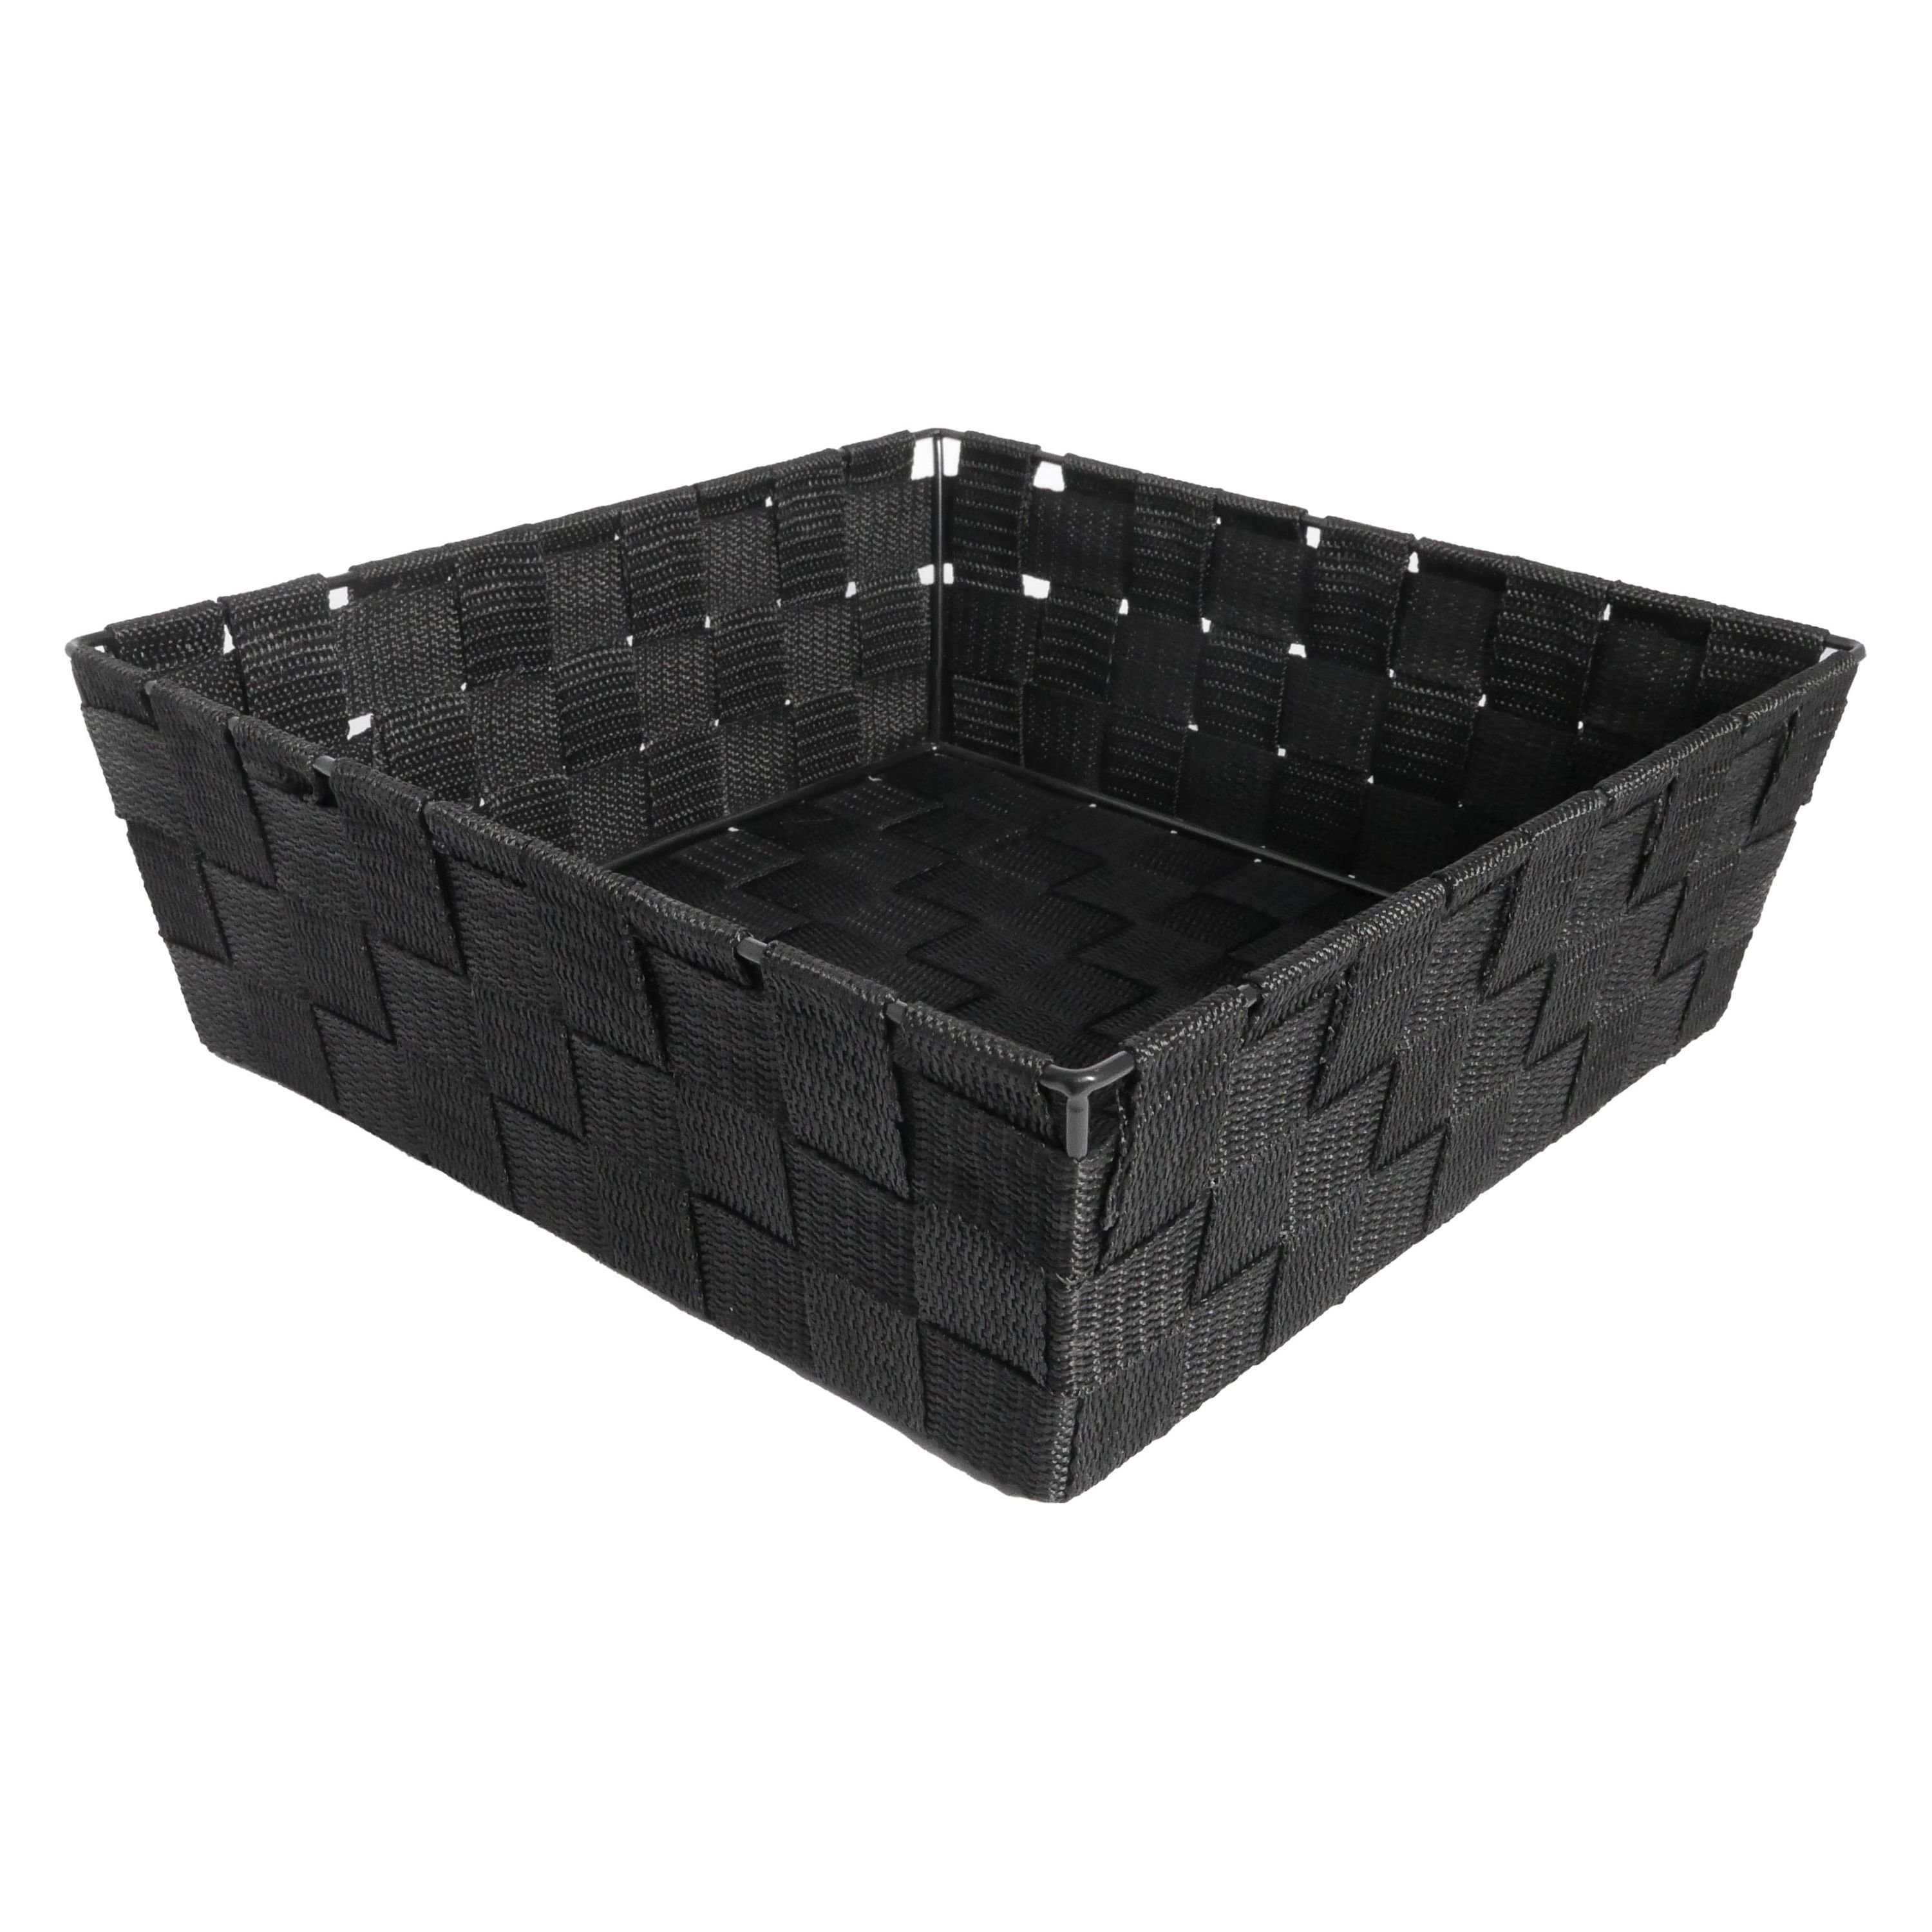 B&S Regalkorb Regalkorb schwarz Ordnungsbox quadatisch 27 x 27 cm